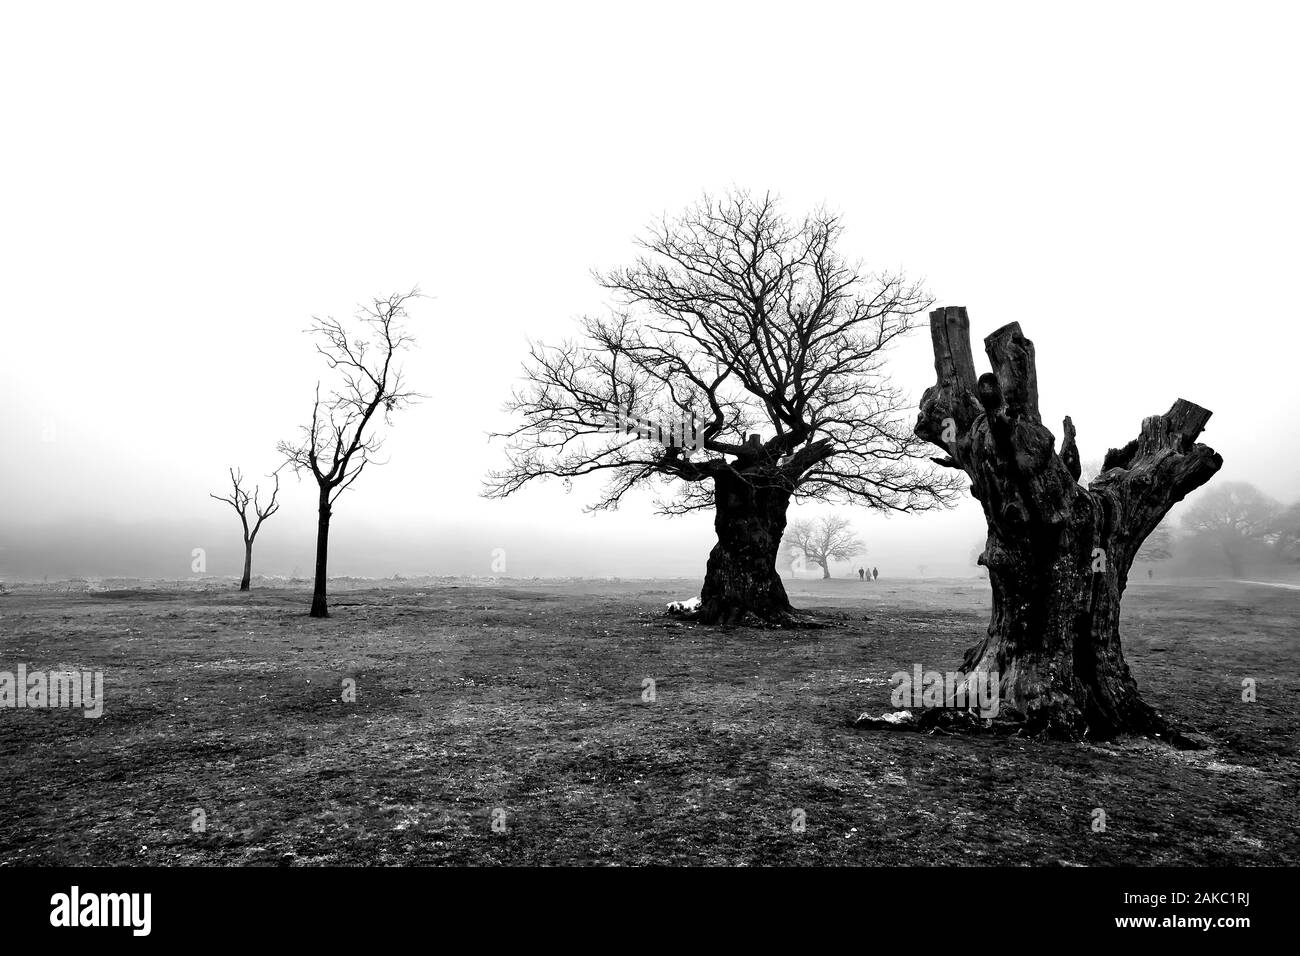 Una malinconia foggy paesaggio, con il vecchio e alberi a secco in primo piano e la gente di scomparire nella nebbia Foto Stock